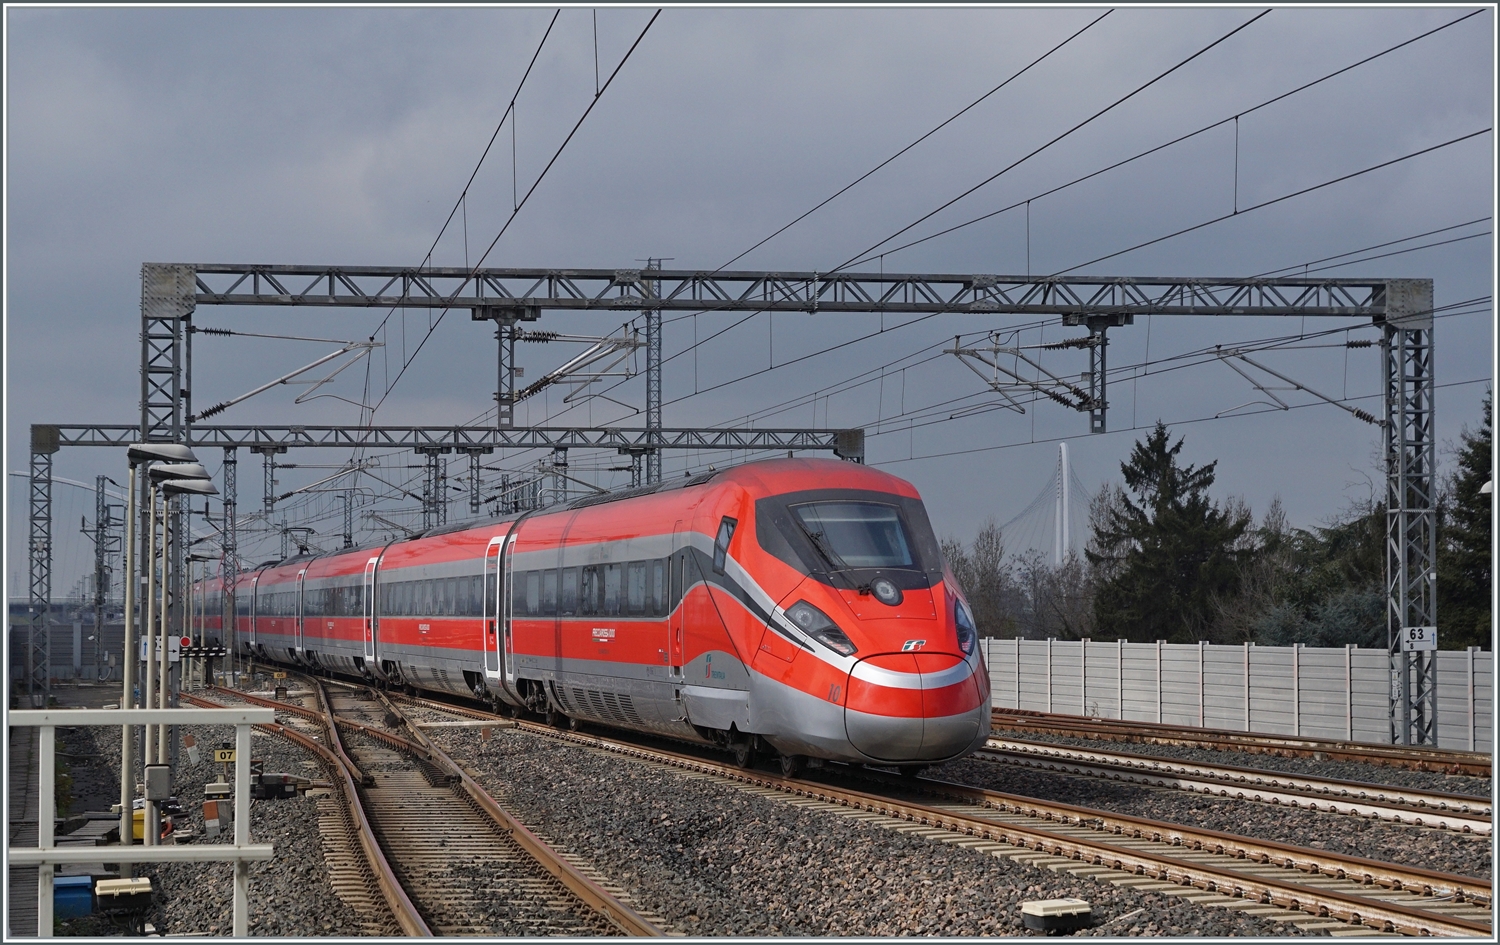 Der FS Trenitalia ETR 400 010 ist als FR9624 von Roma nach Milano unterwegs und fährt ohne Halt durch den Bahnhof von Reggio Emilia AV. 

14. März 2023